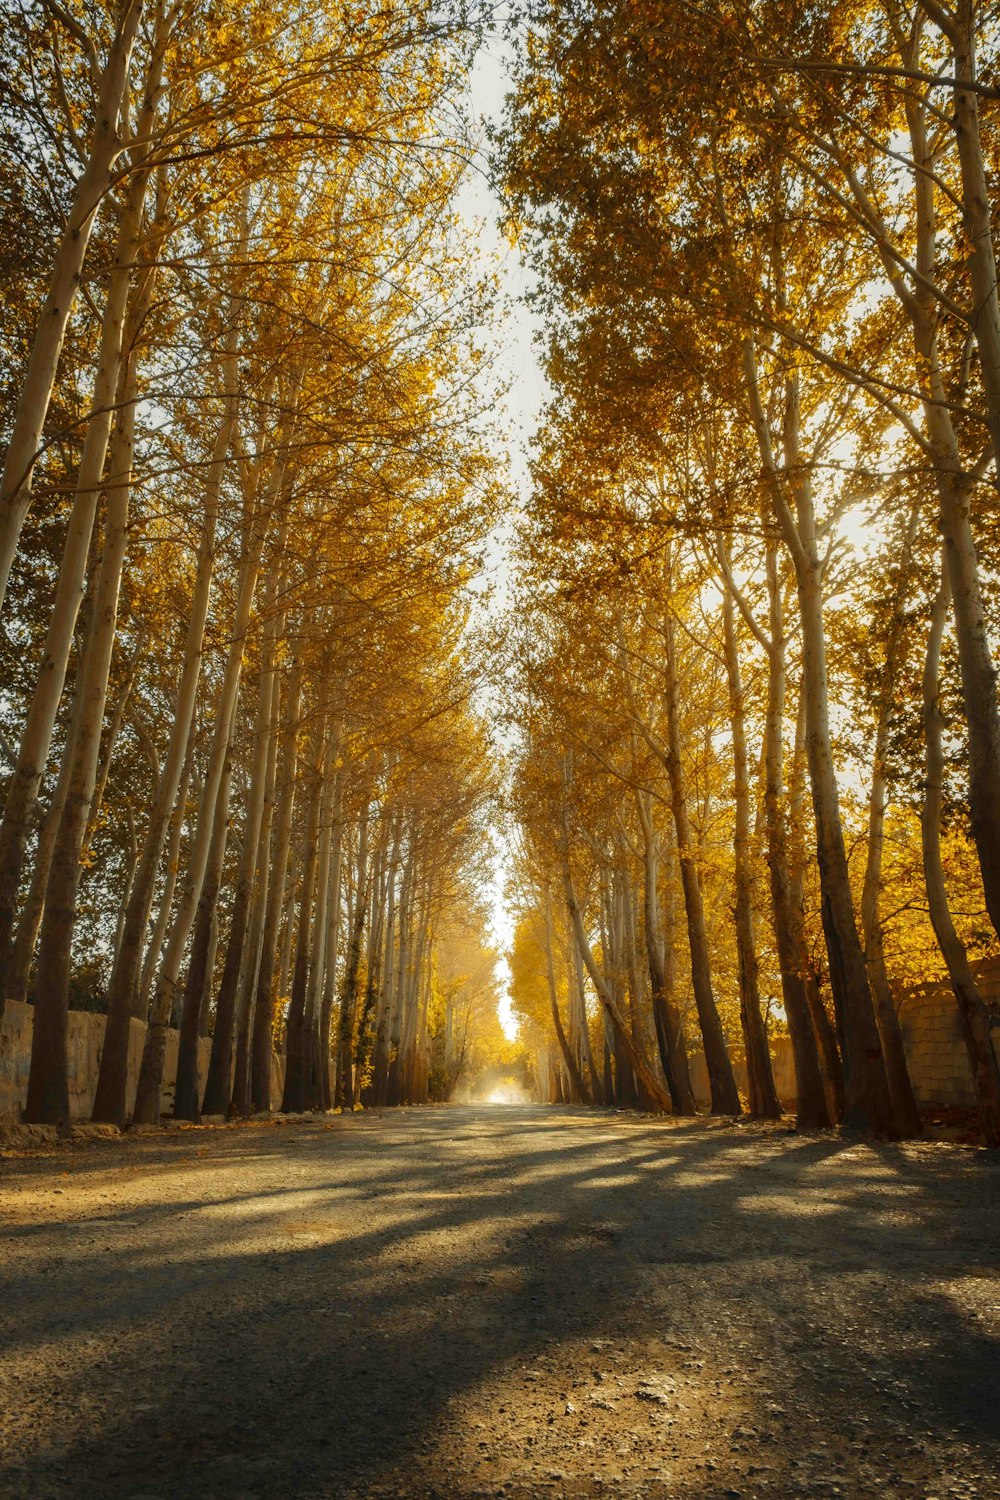 Un chemin de terre entouré d’arbres aux feuilles jaunes